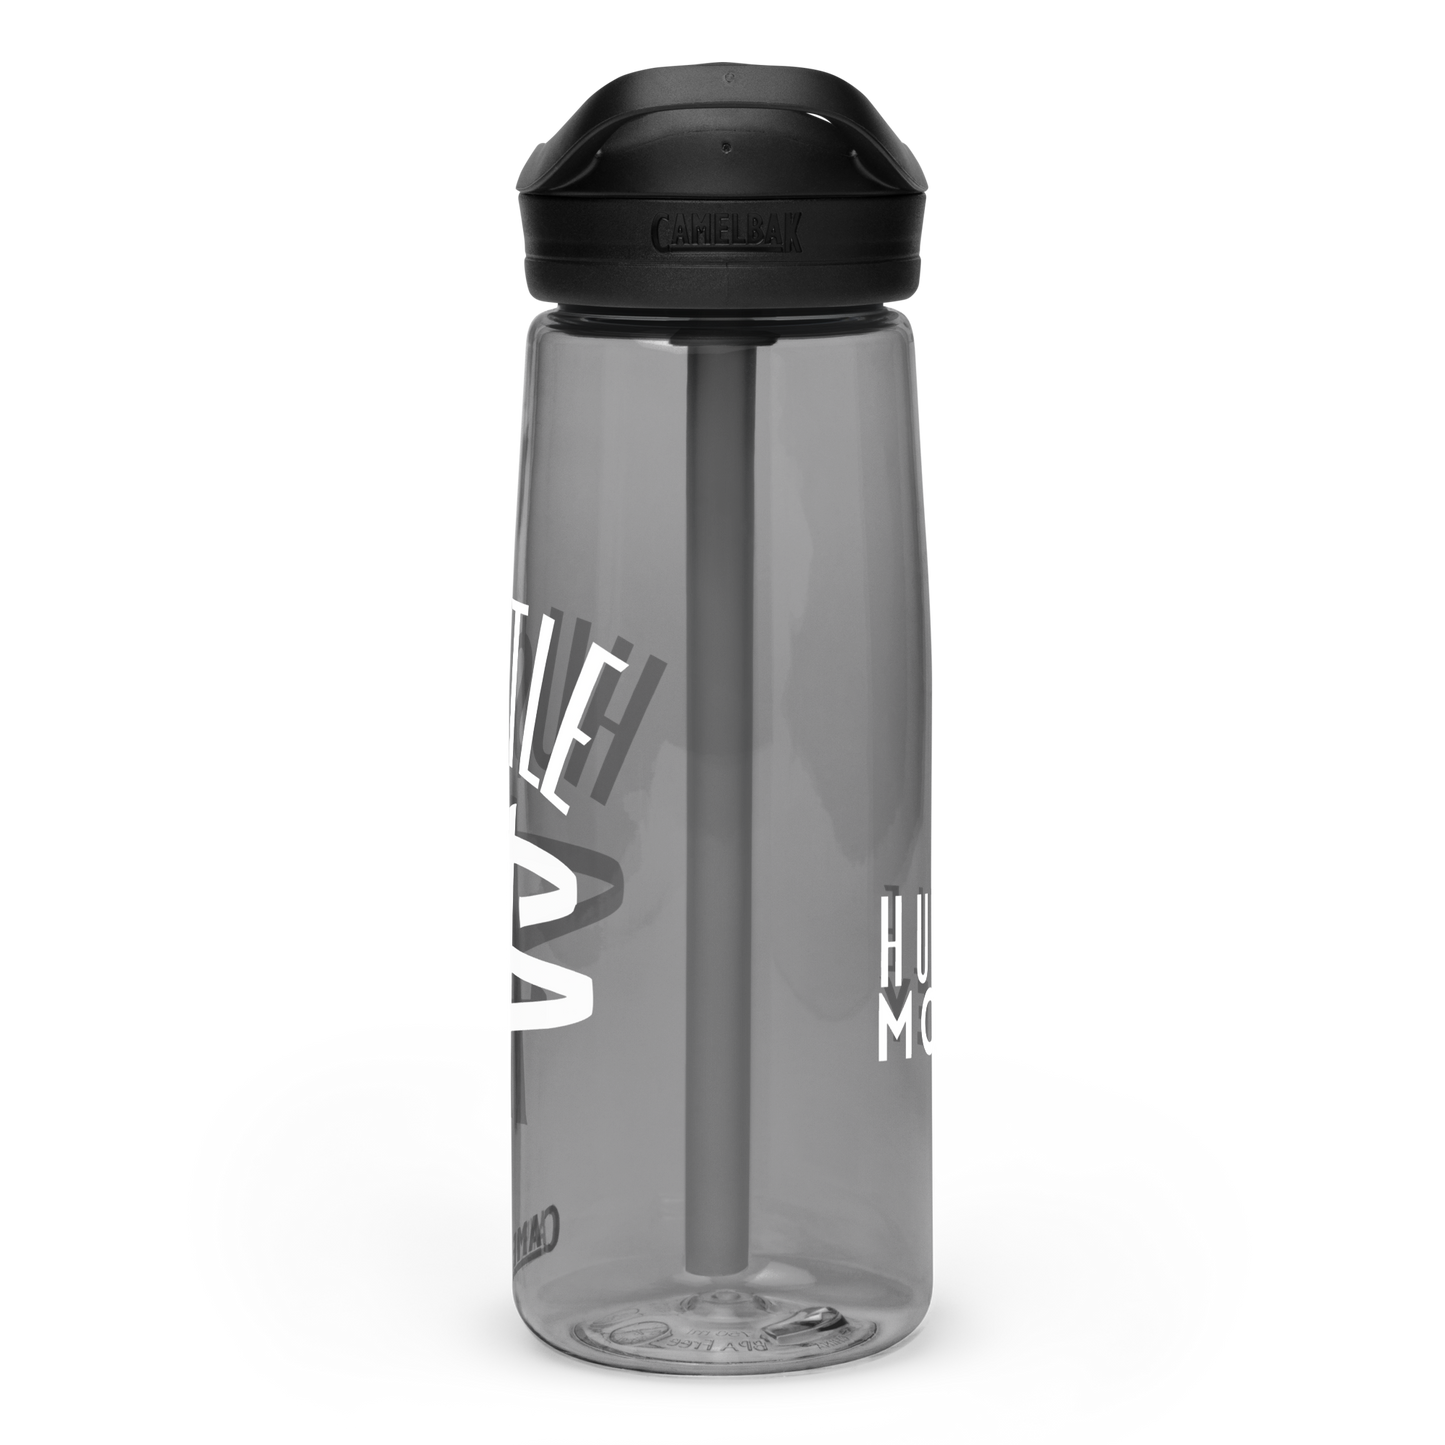 HM Sports water bottle